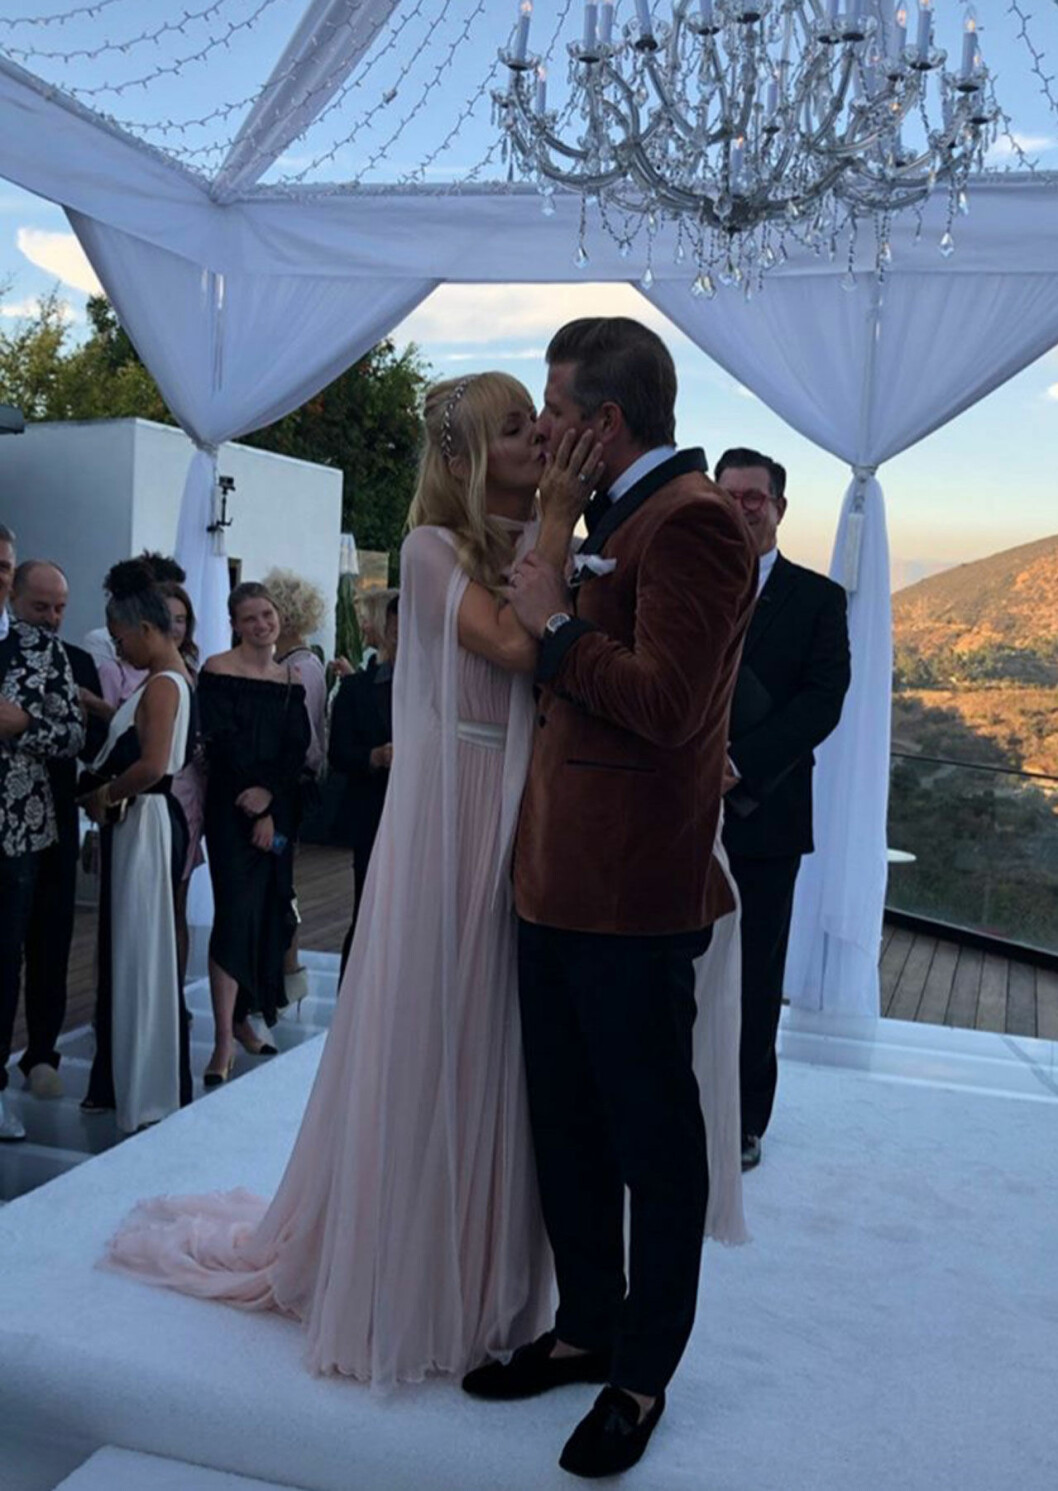 Bröllopskyssen mellan Izabella Scorupco och hennes nya man Karl Rosengren vid bröllopet i Hollywood.